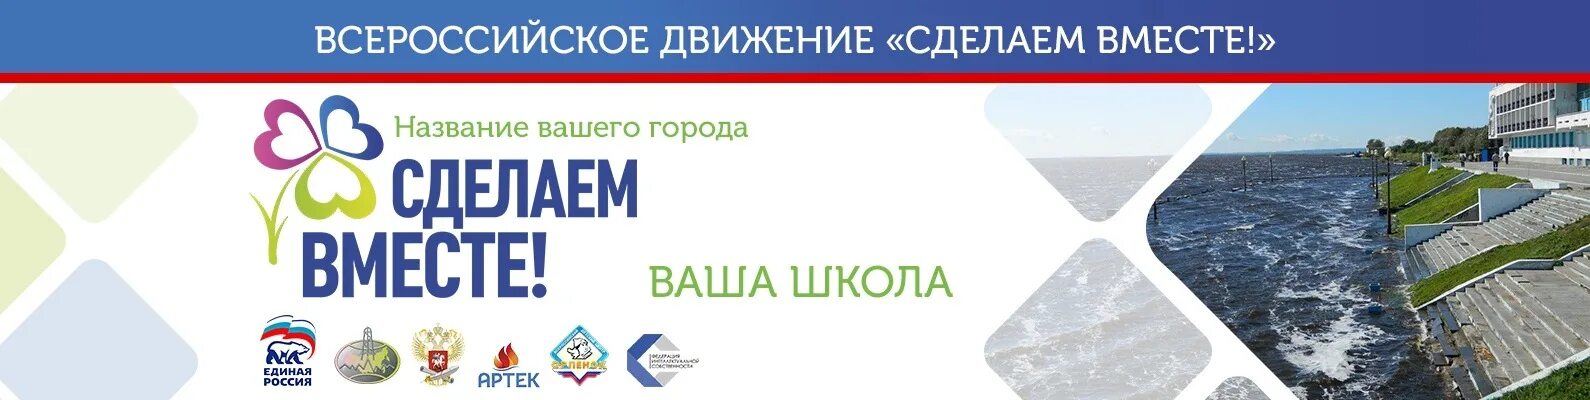 Сделаем вместе регистрация. Сделаем вместе. Всероссийское движение сделаем вместе. Сделаем вместе логотип акции. Экологическая акция сделаем вместе.